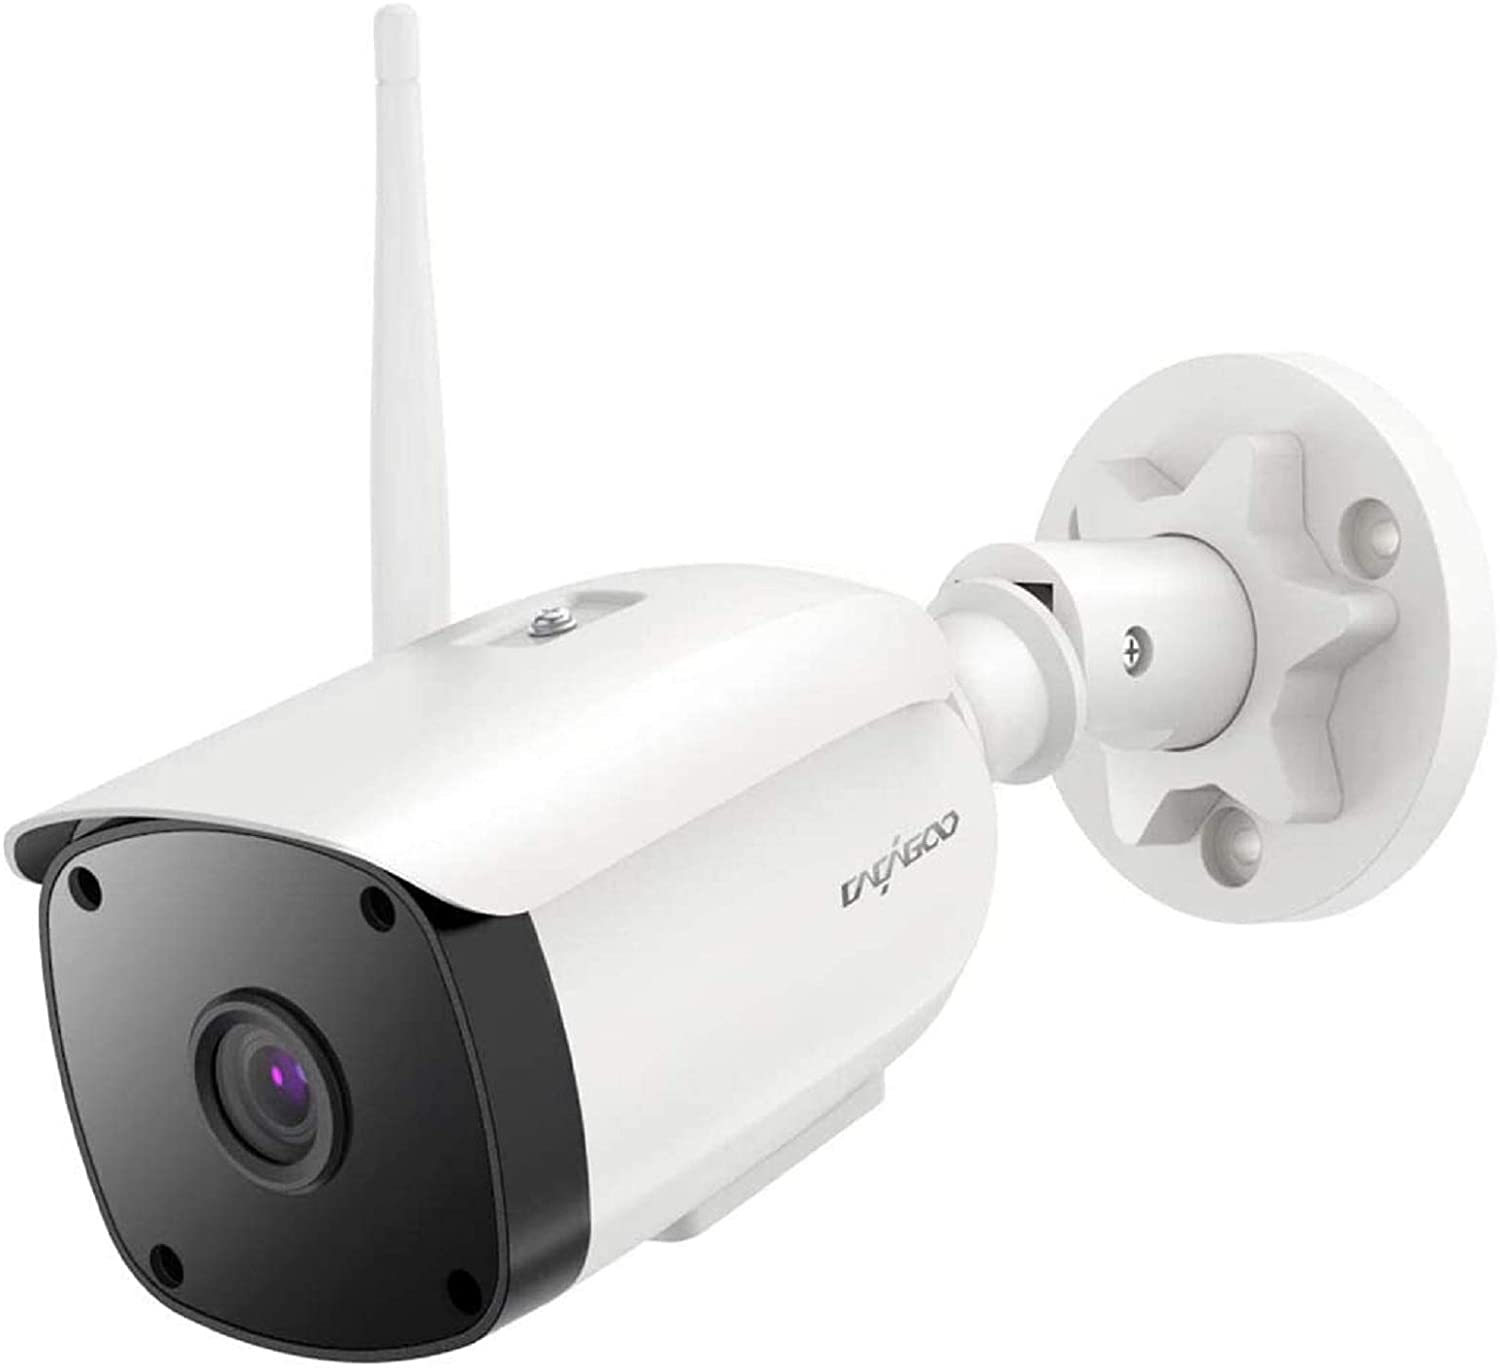 La cámara de vigilancia Yi Home Camera en oferta: solo 24€ en